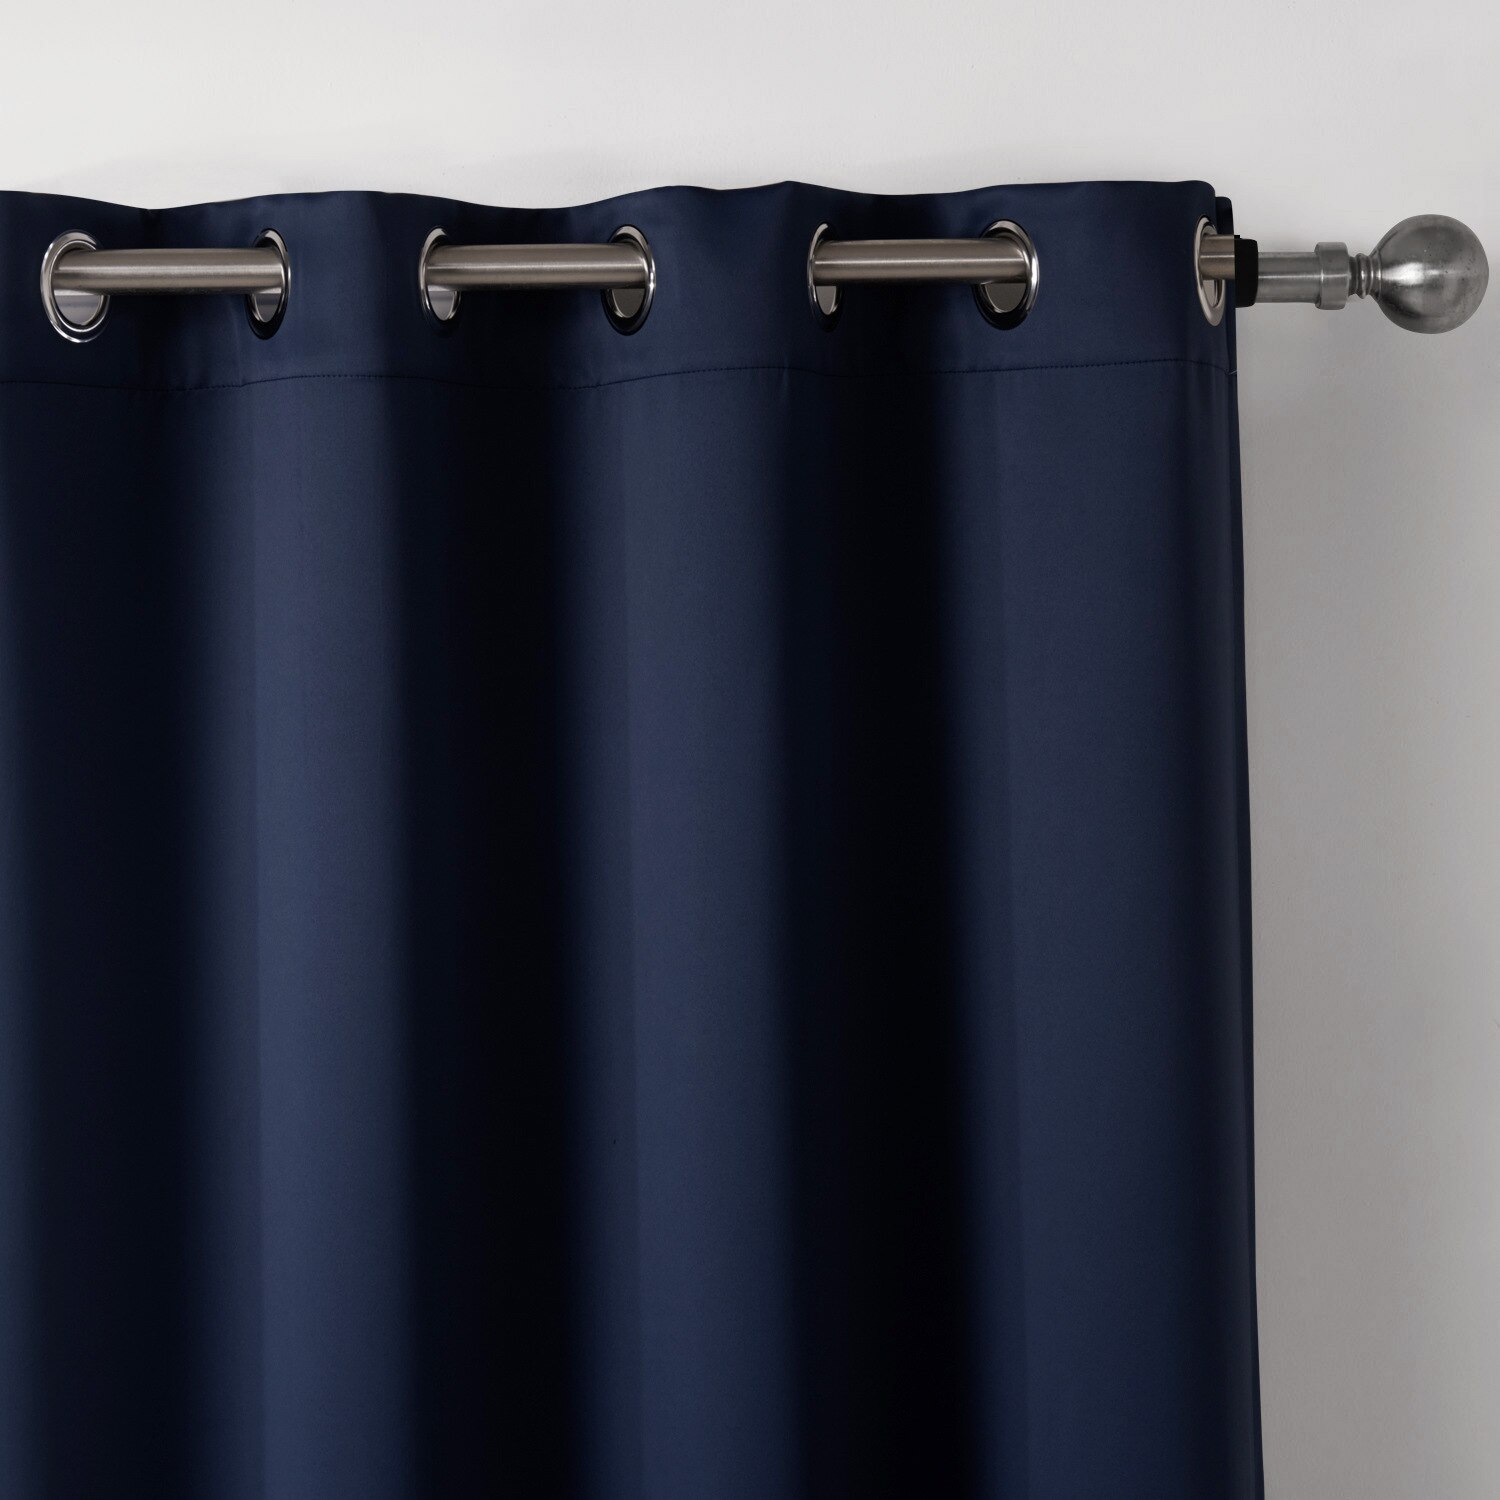 Ren farve gardin mørkeblå soveværelse skygge klud gardin bløde husholdningsartikler hjem tekstilprodukter